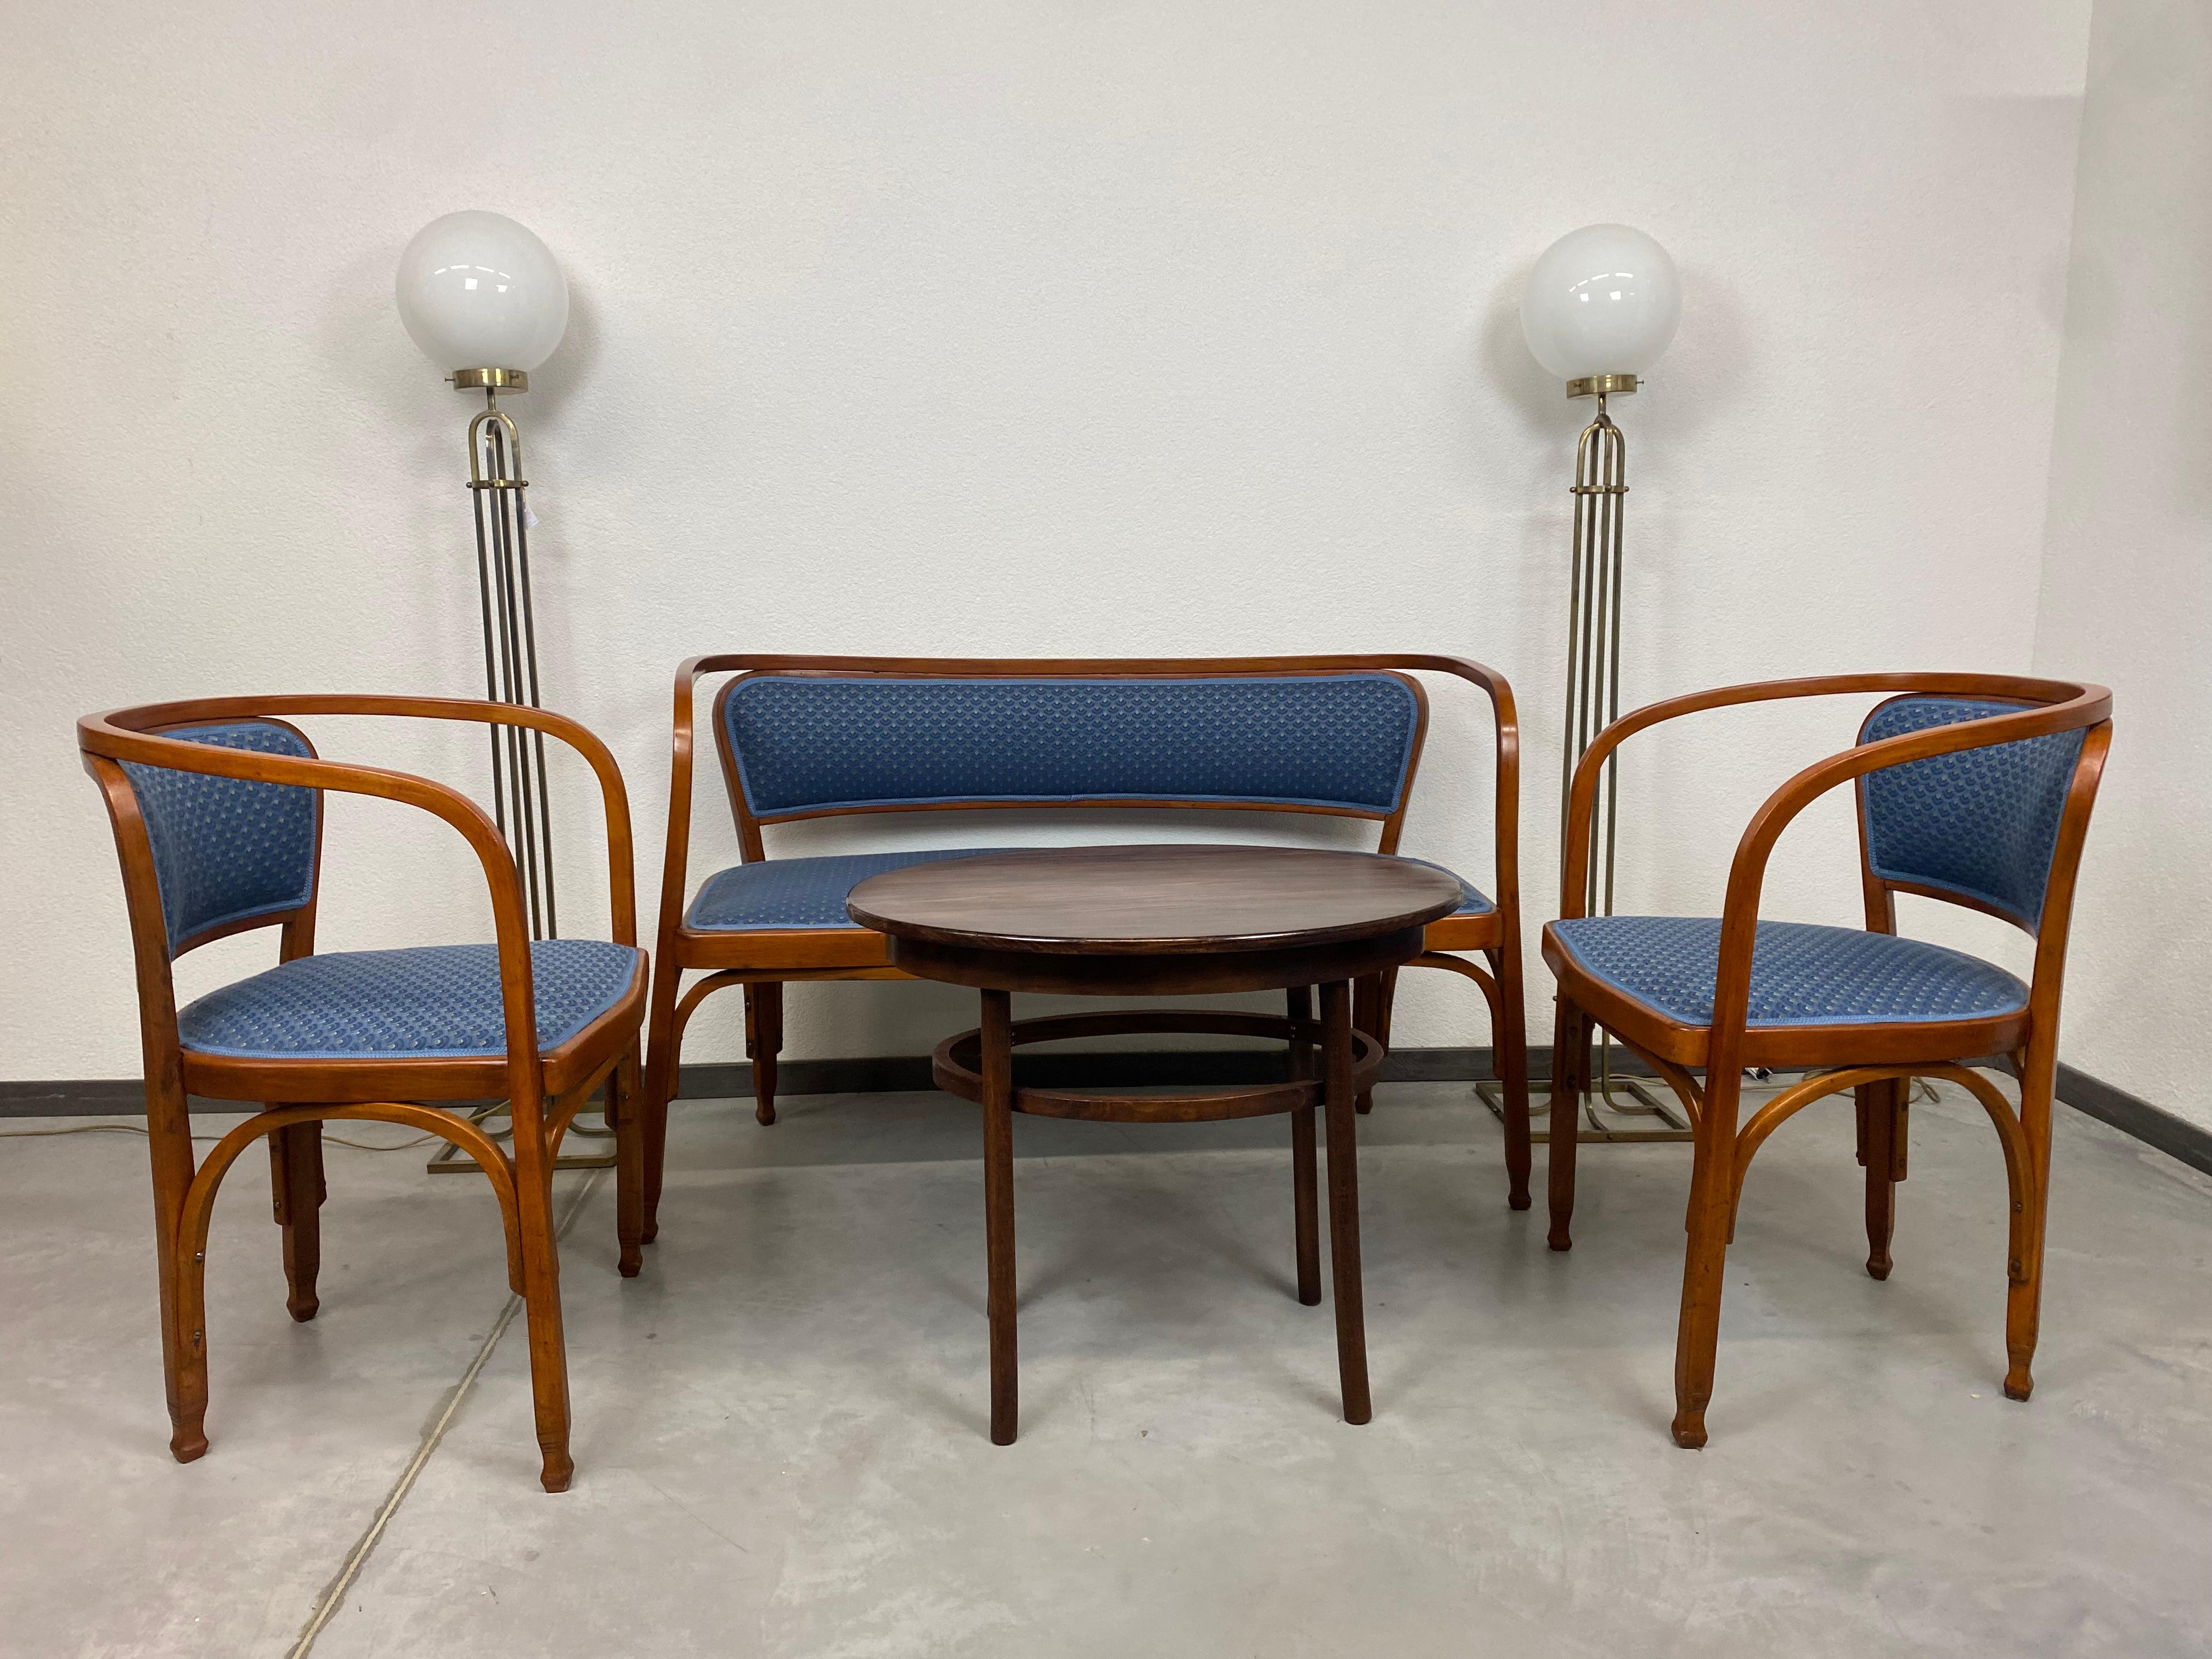 Groupe de sièges Sécession n°715 de Gustav Siegel pour J&J Kohn. Conçu à l'origine en 1899 pour l'exposition universelle de Paris en 1900.